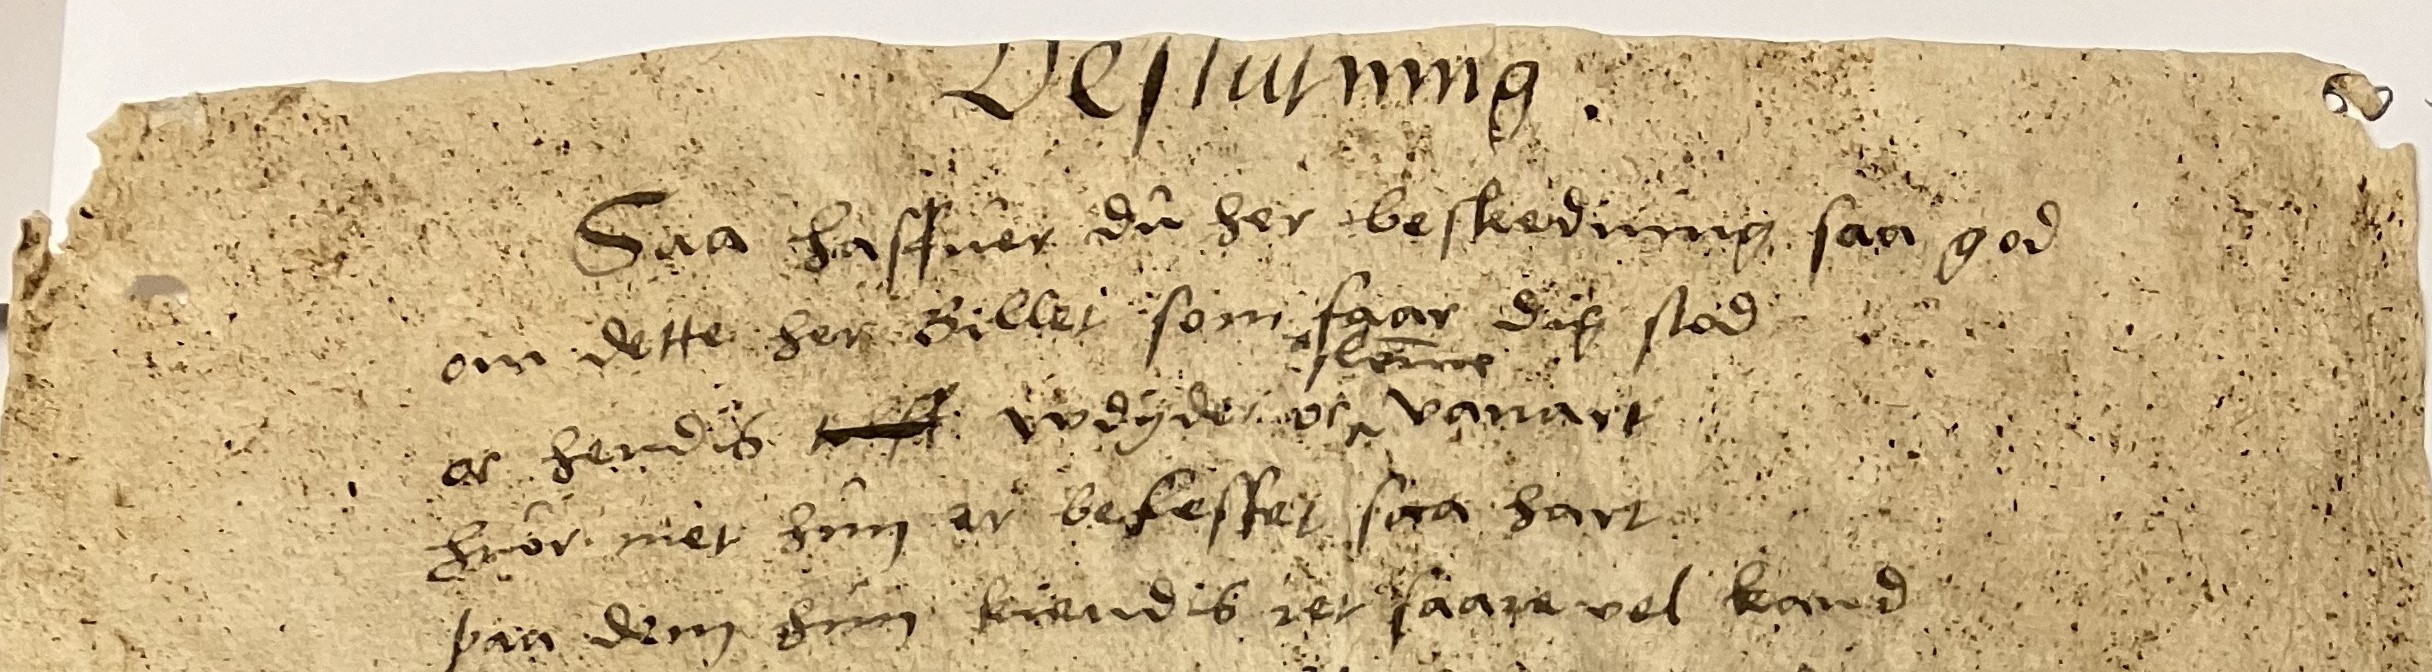 Närbild av handskriven text på ett gulnat och slitet pappersark, där ordet Beslutning står överst på sidan.